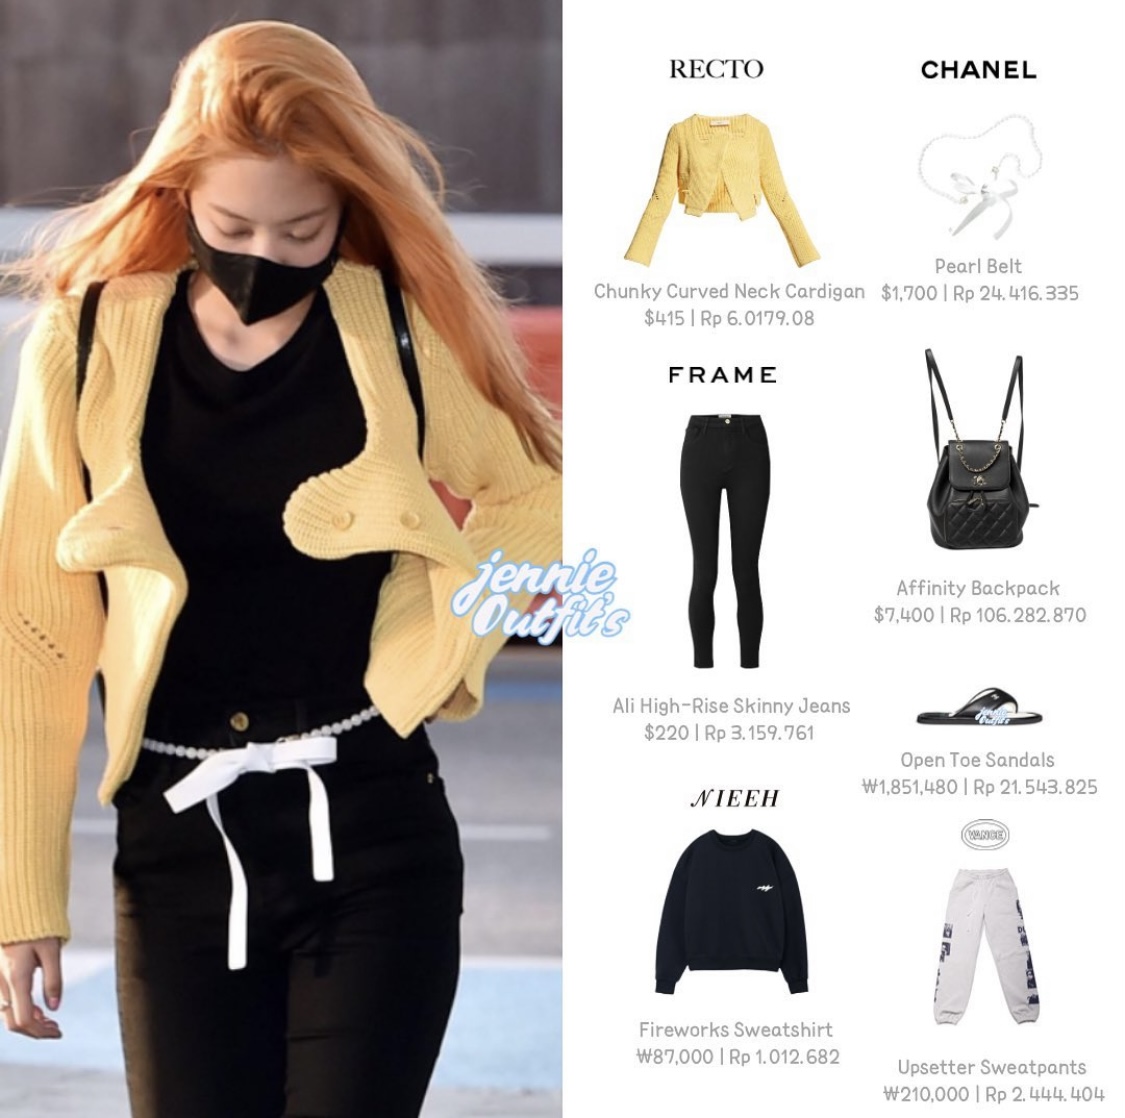 Bóc giá outfit đơn giản mà gần 300 triệu đồng của Jennie khi đi sân bay.